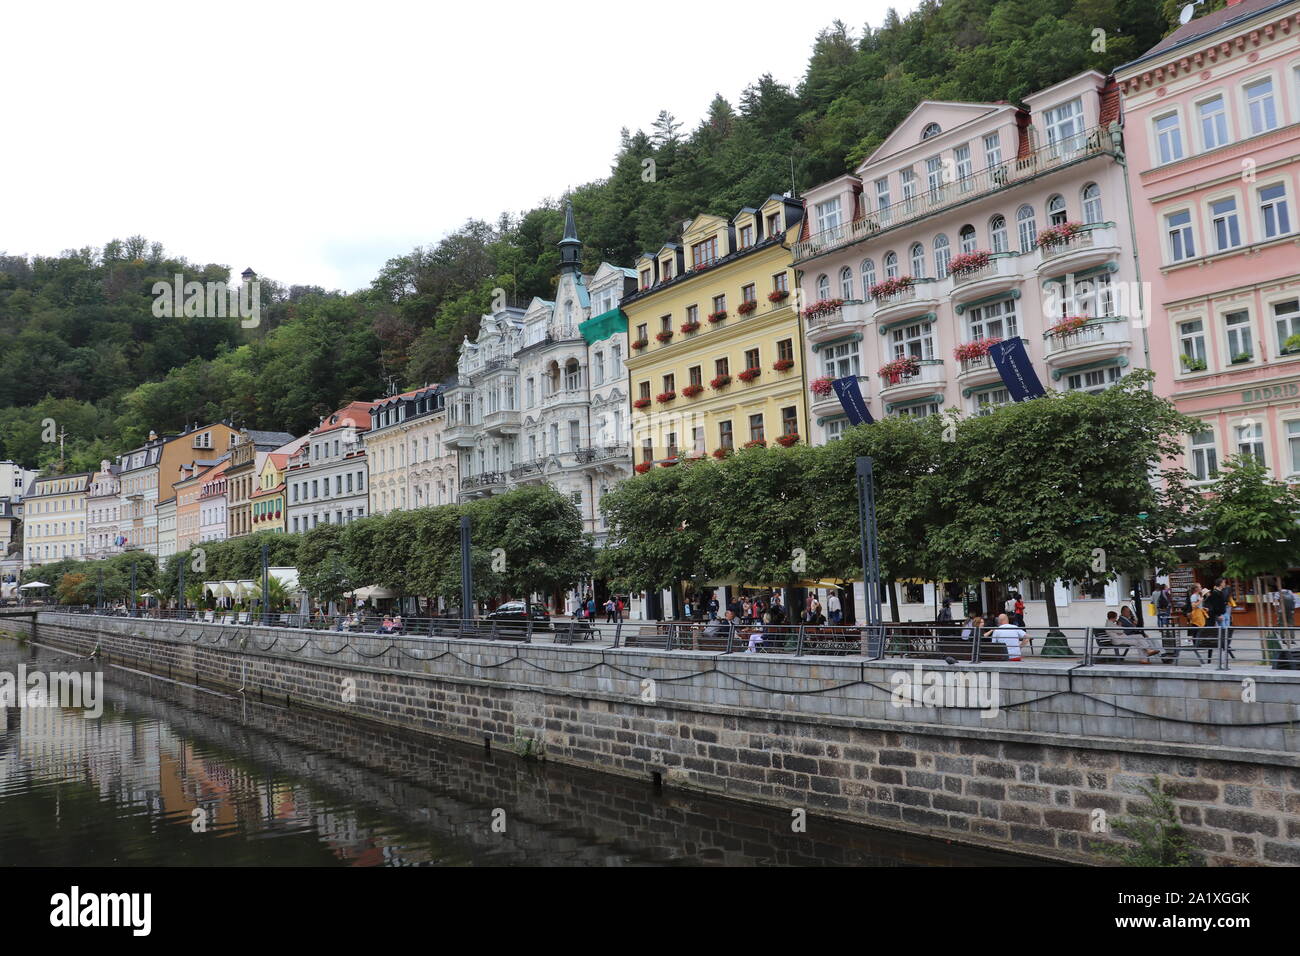 Schöne Gebäude in der Stadt Spa. Karlovy Vary, Tschechische Republik Stockfoto